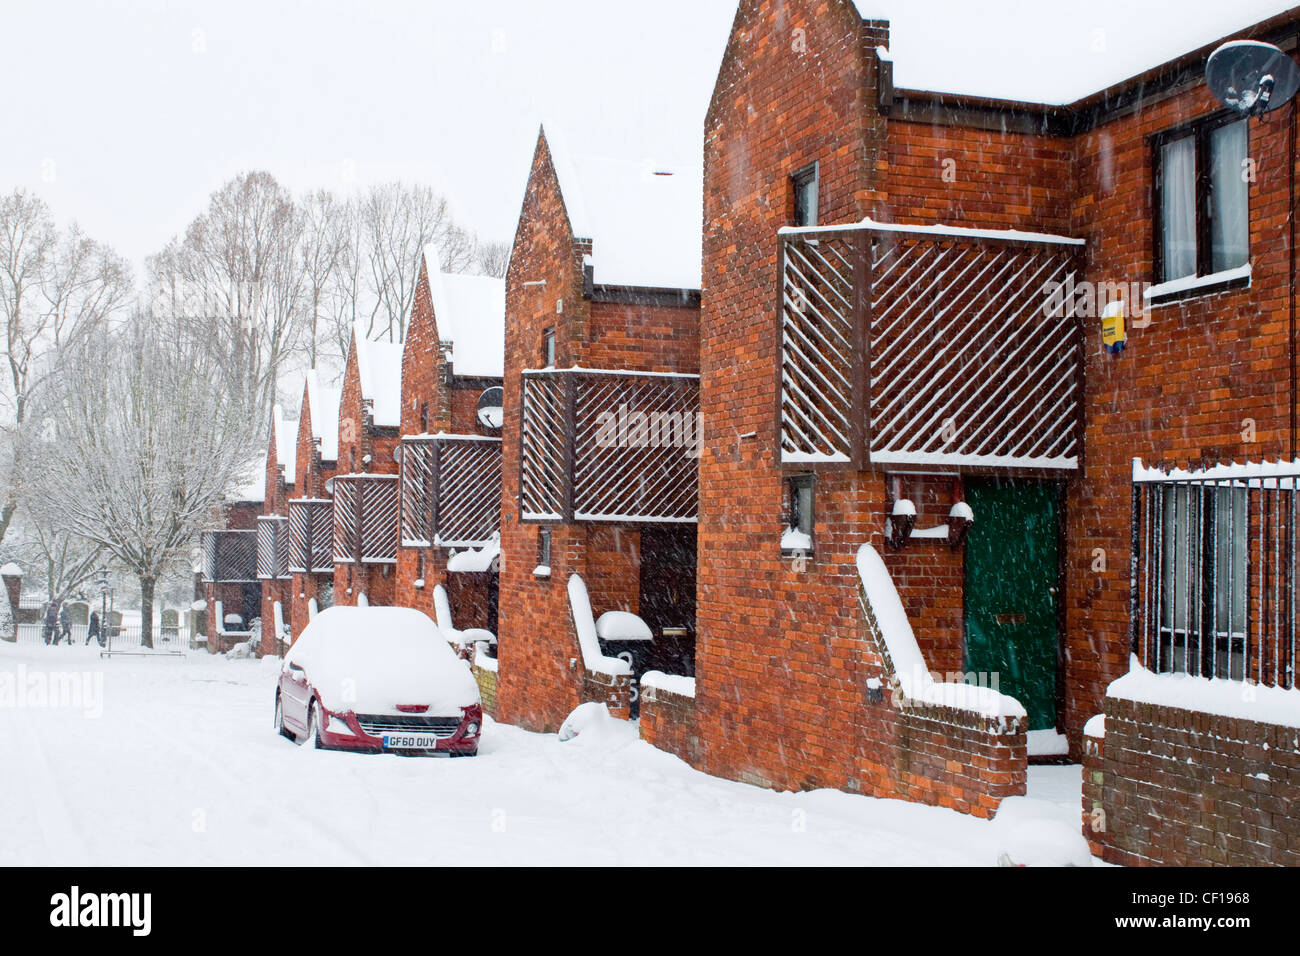 Canterbury UK Gas Street rue couverte de neige winter scene Banque D'Images